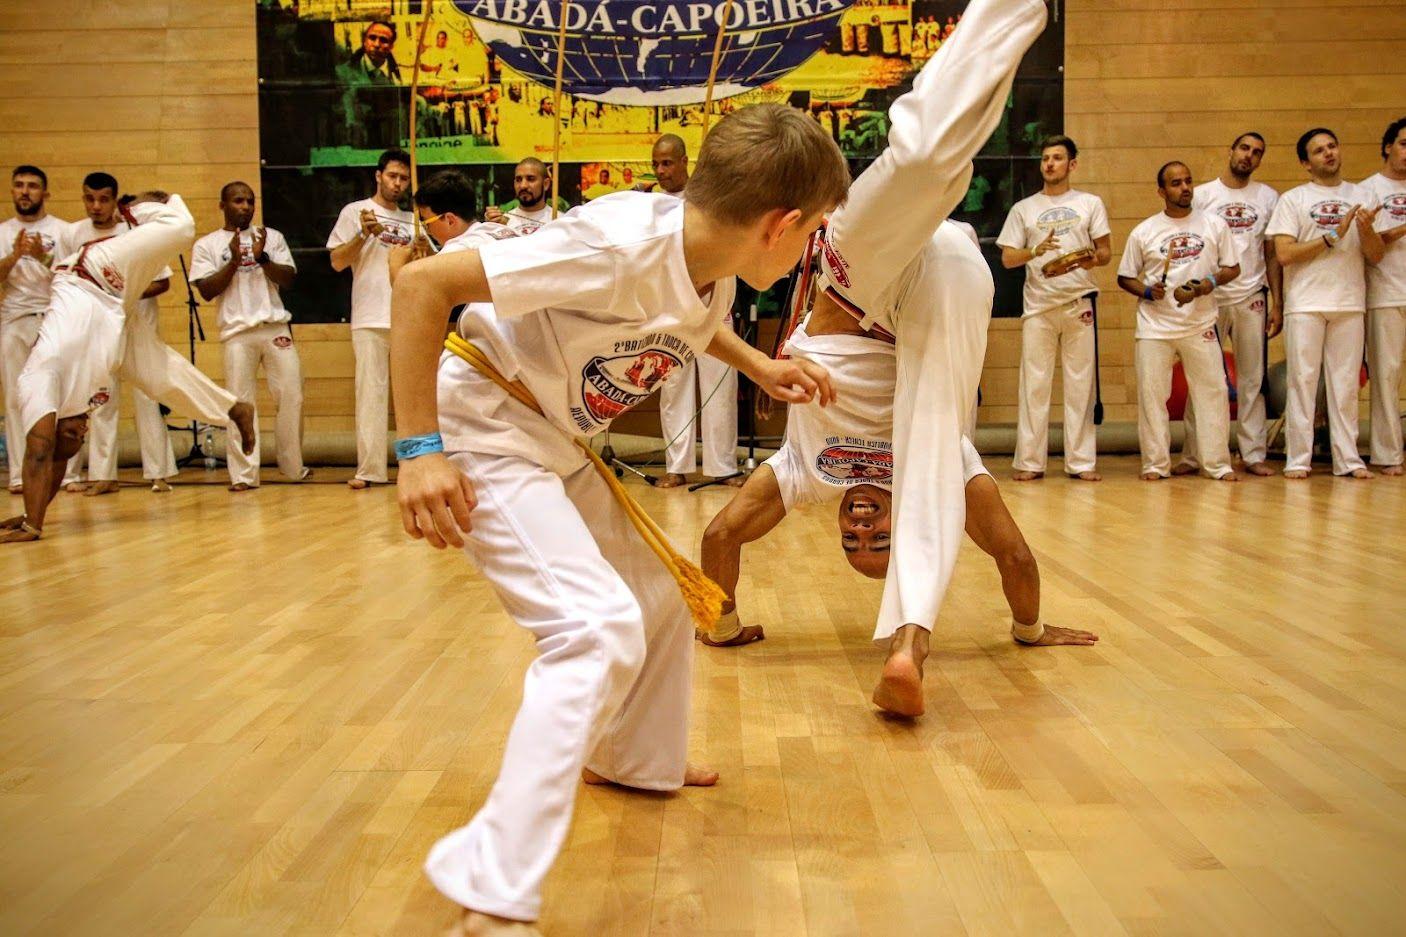 Capoeira - dospělí